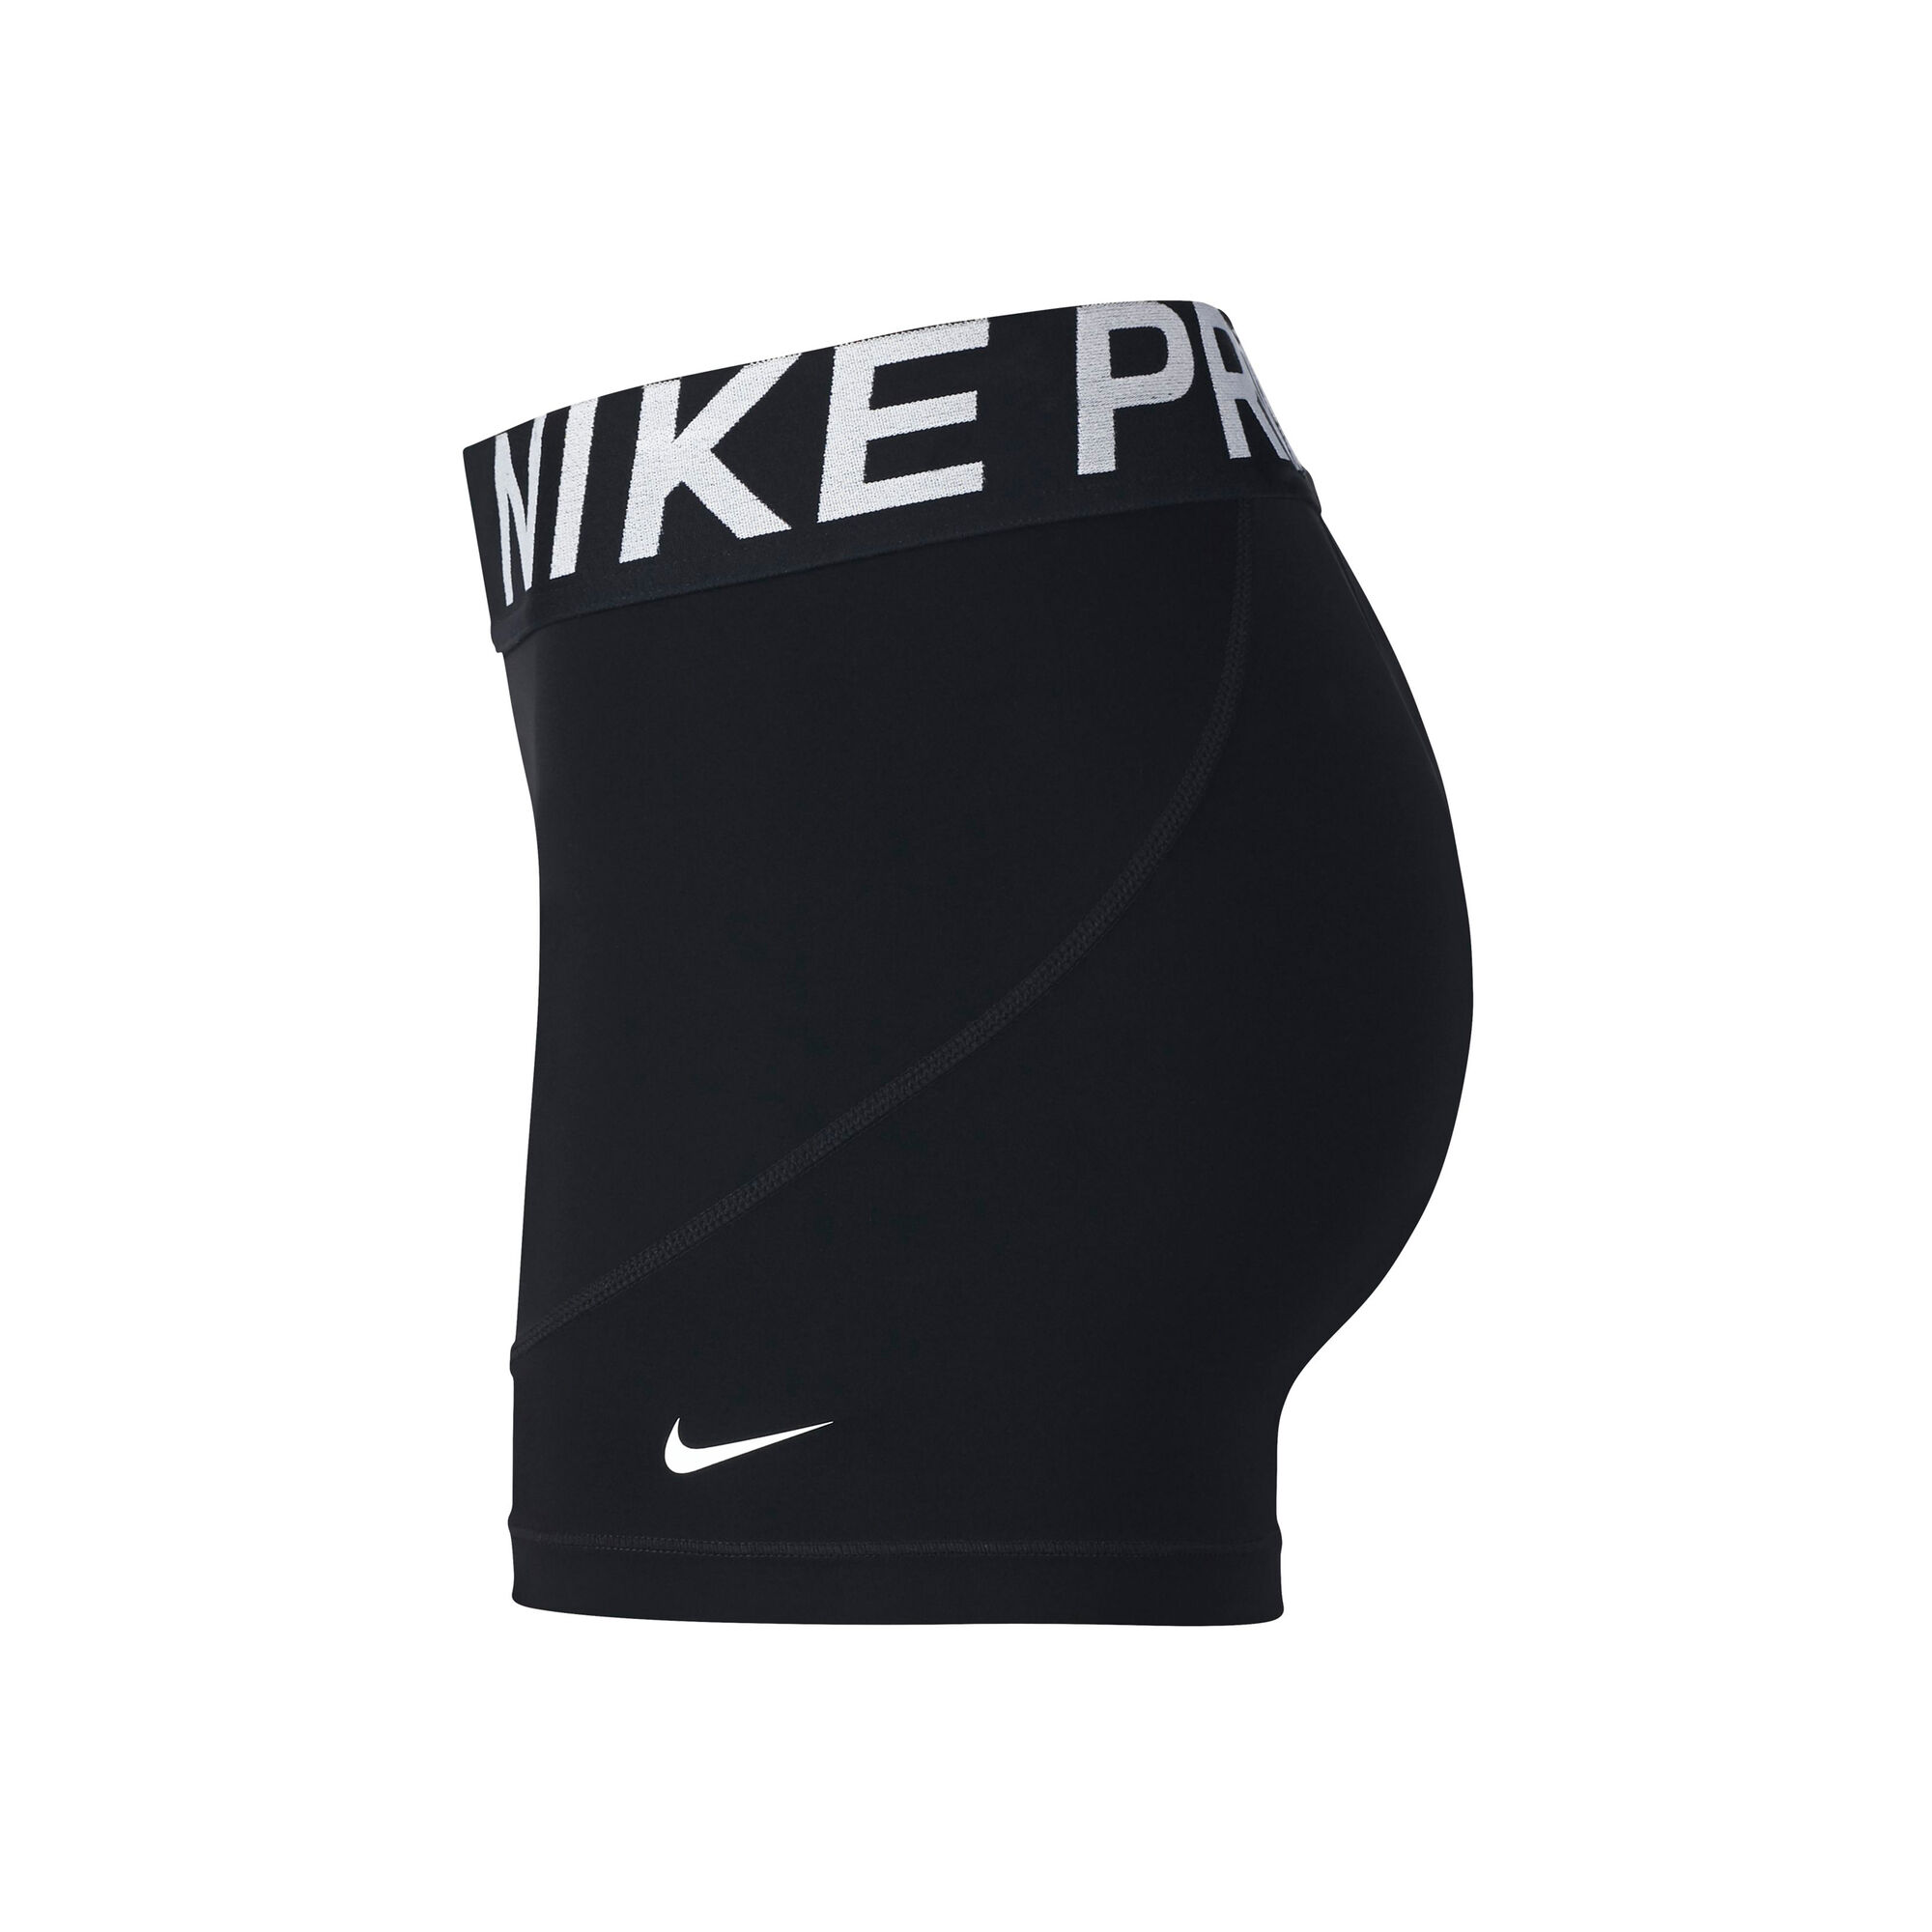 Buy Shorts Nikepro Online